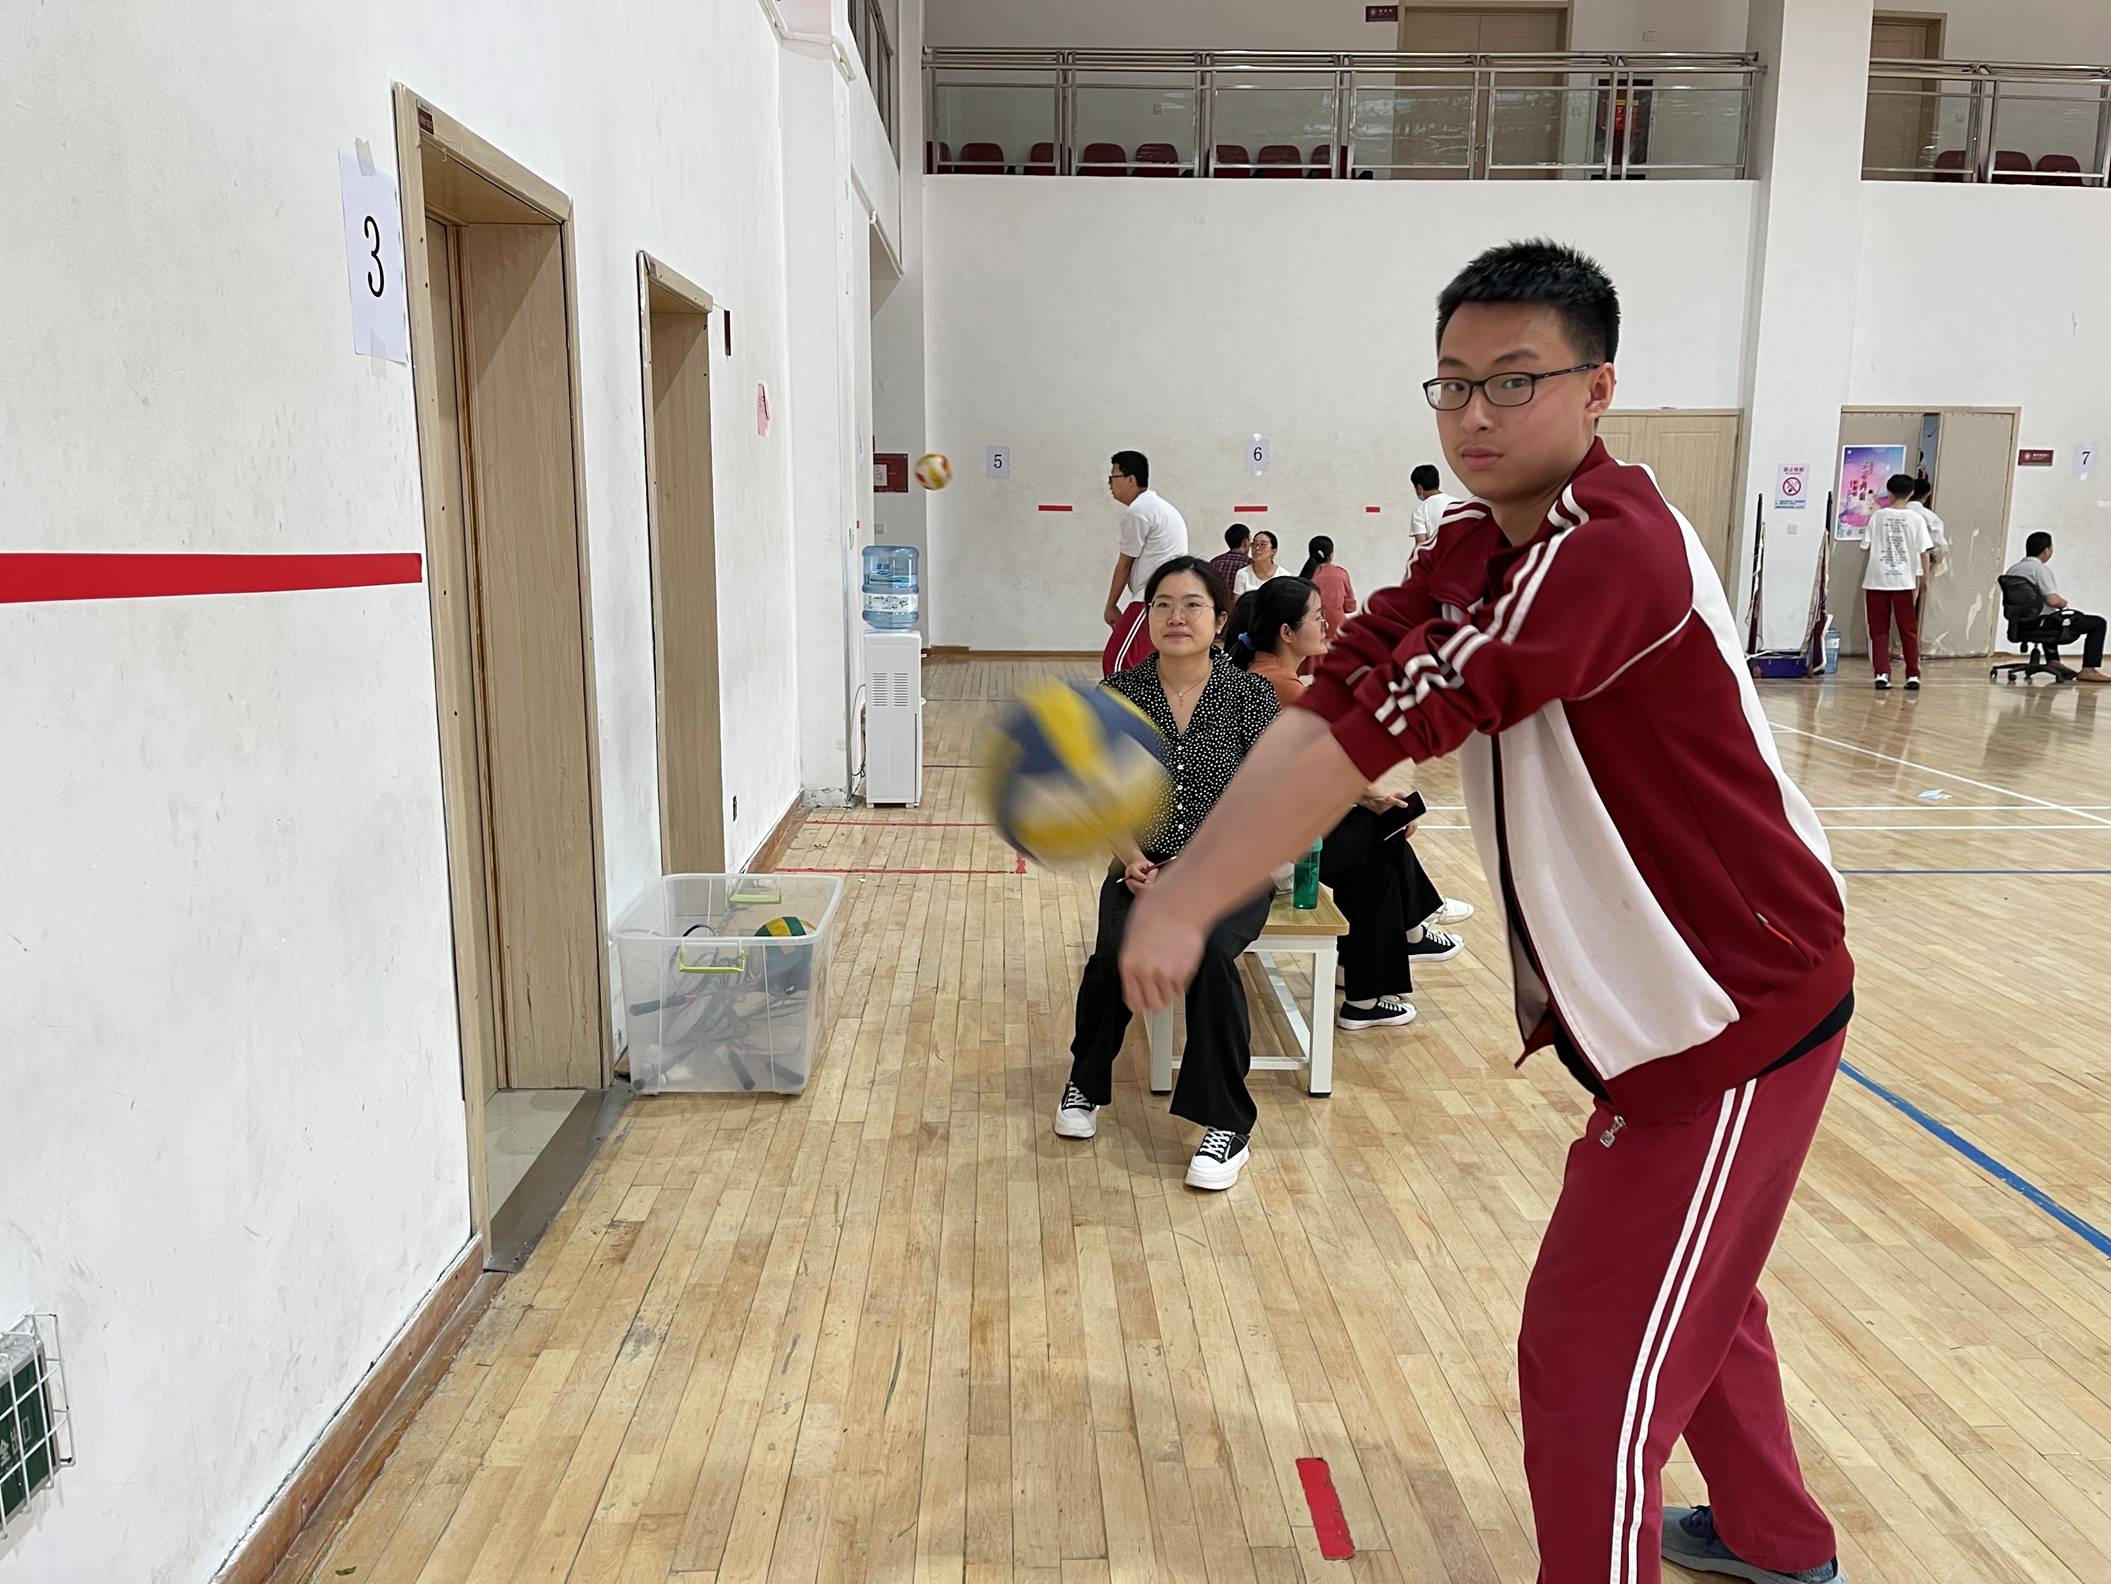 西安市曲江第一中学开展初2019级排球对墙垫球比赛